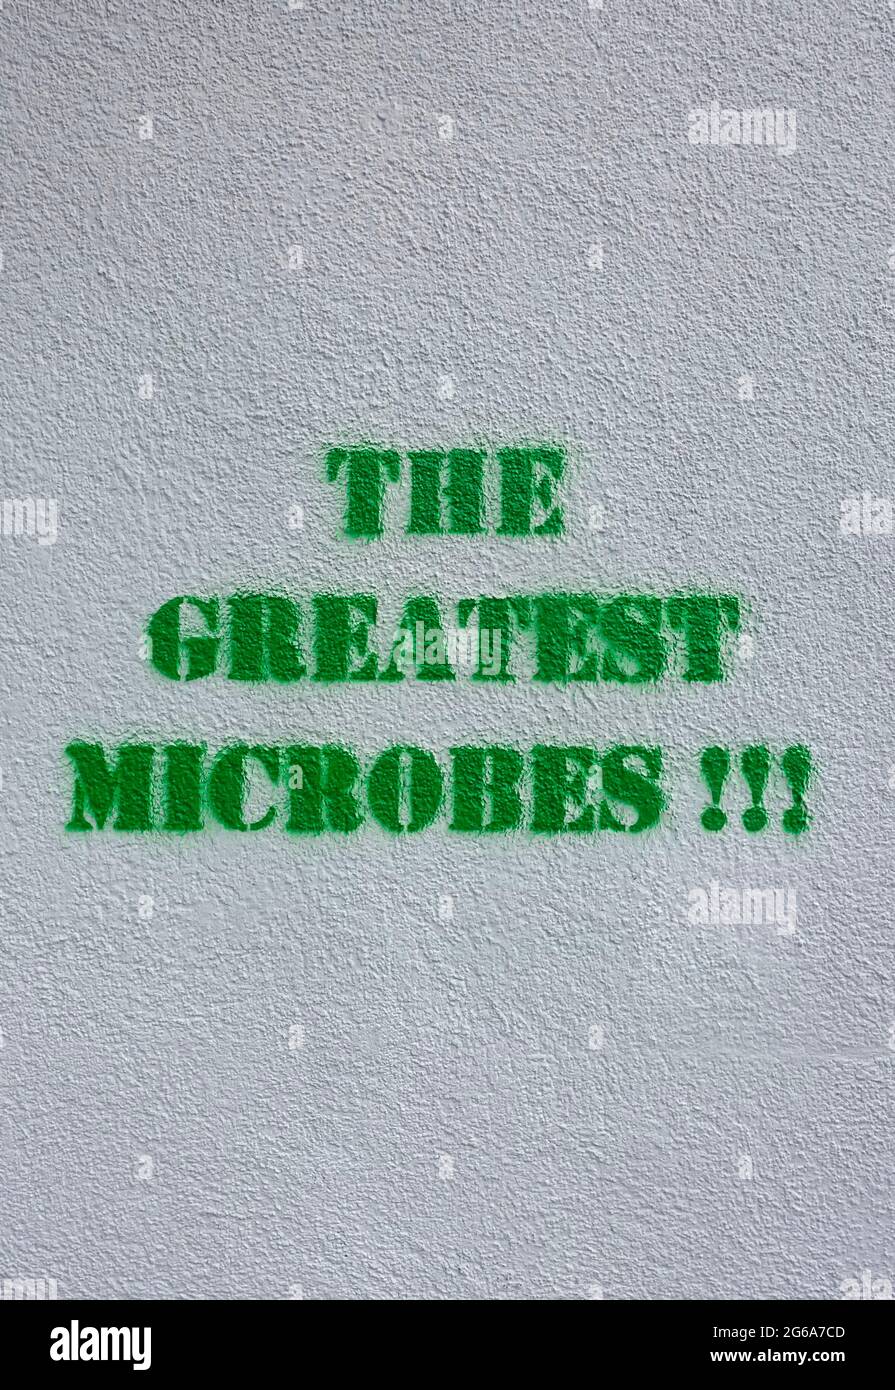 Stencil, les plus grands microbes, Berlin, Allemagne Banque D'Images